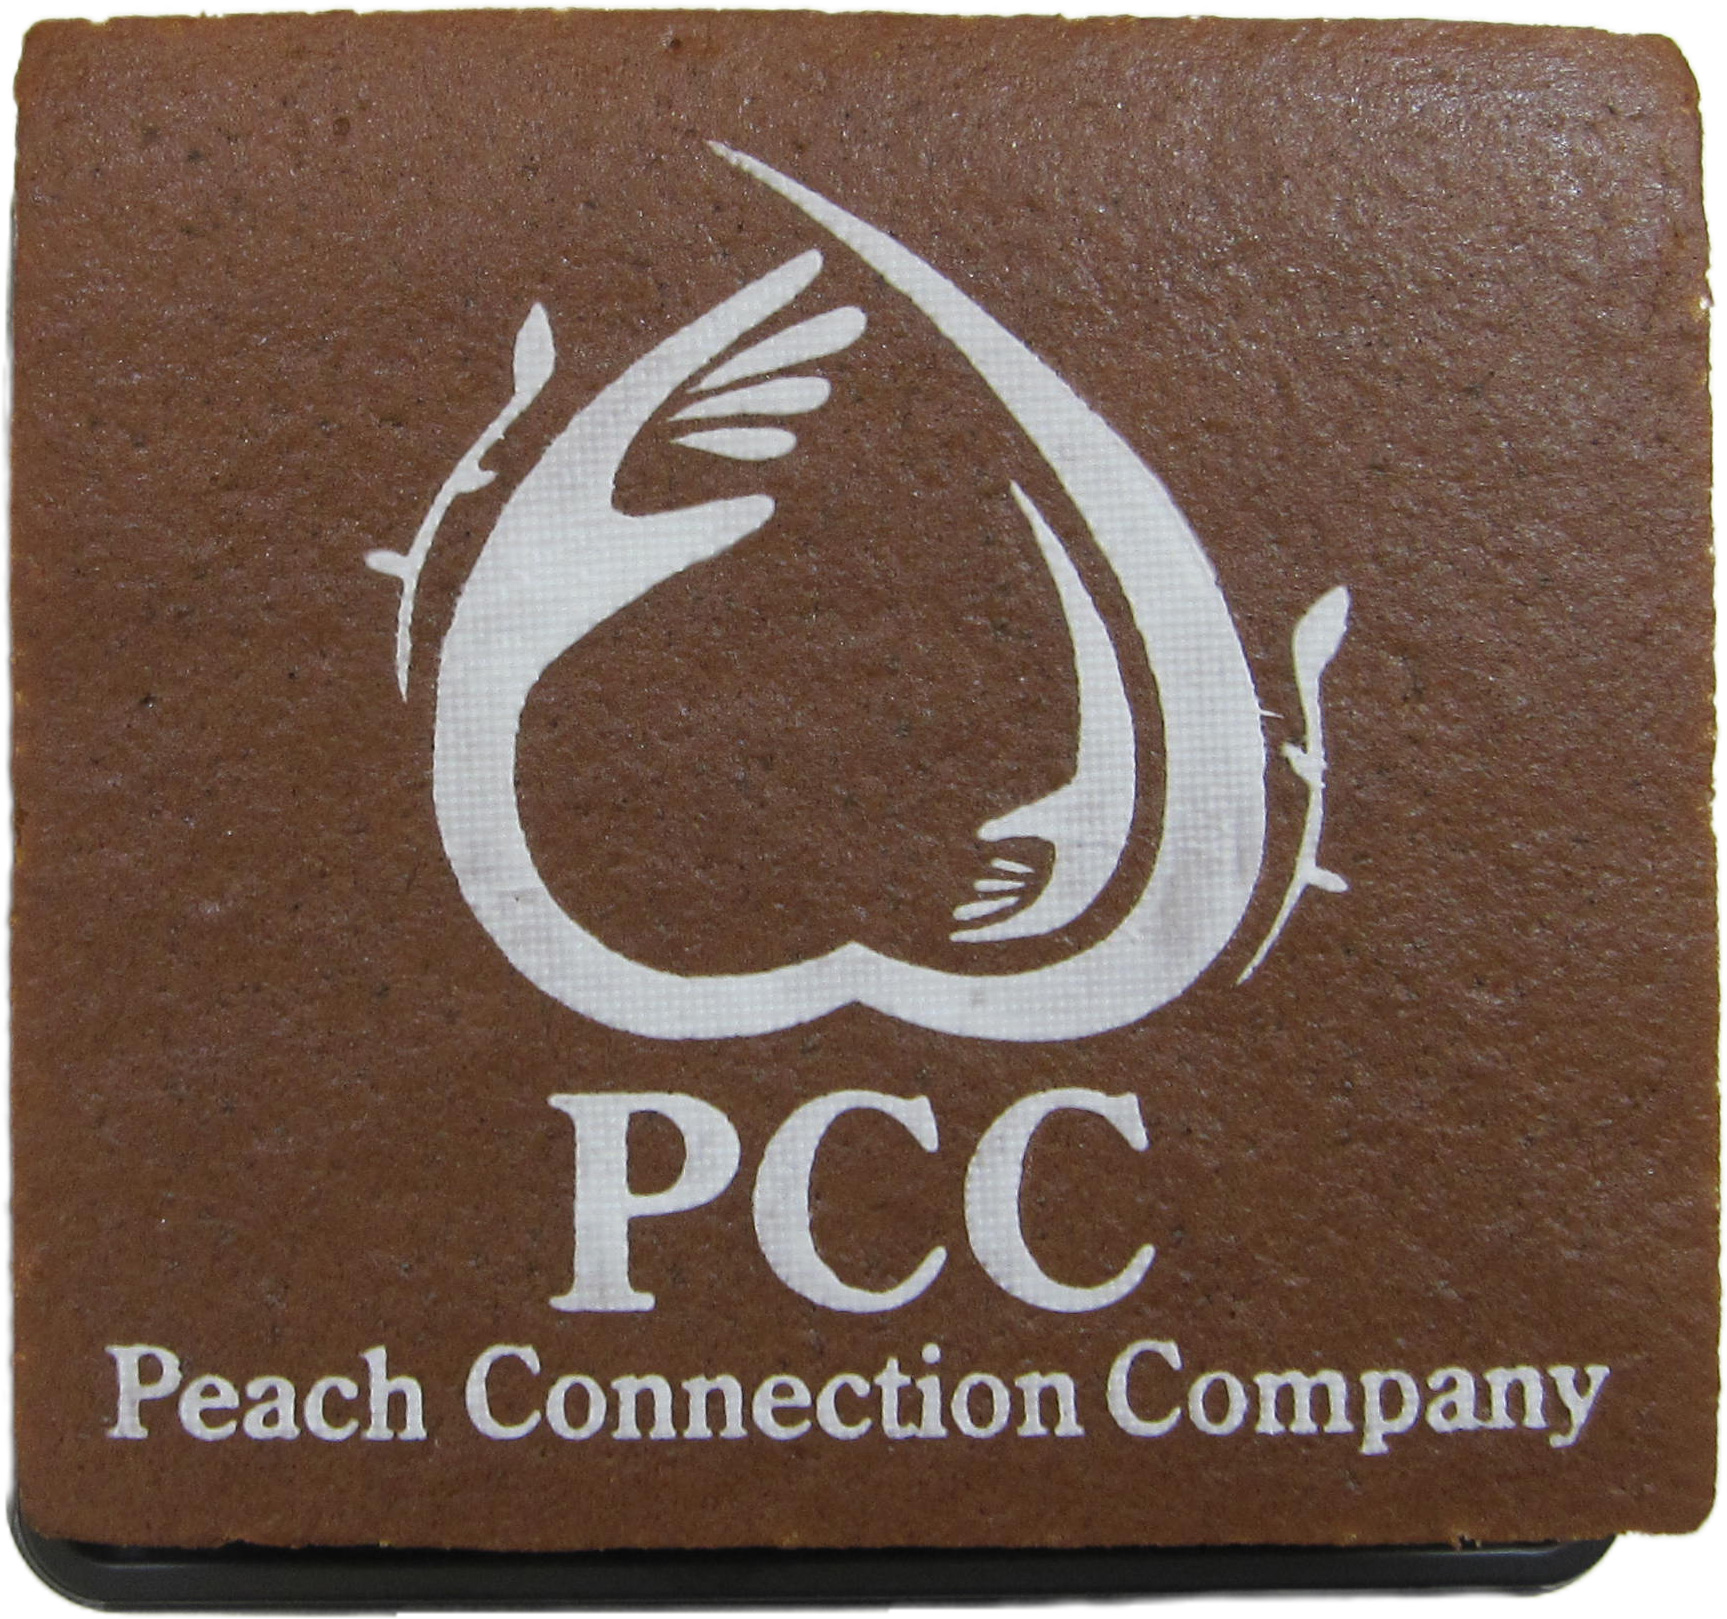 PCC Peach Connection Company様